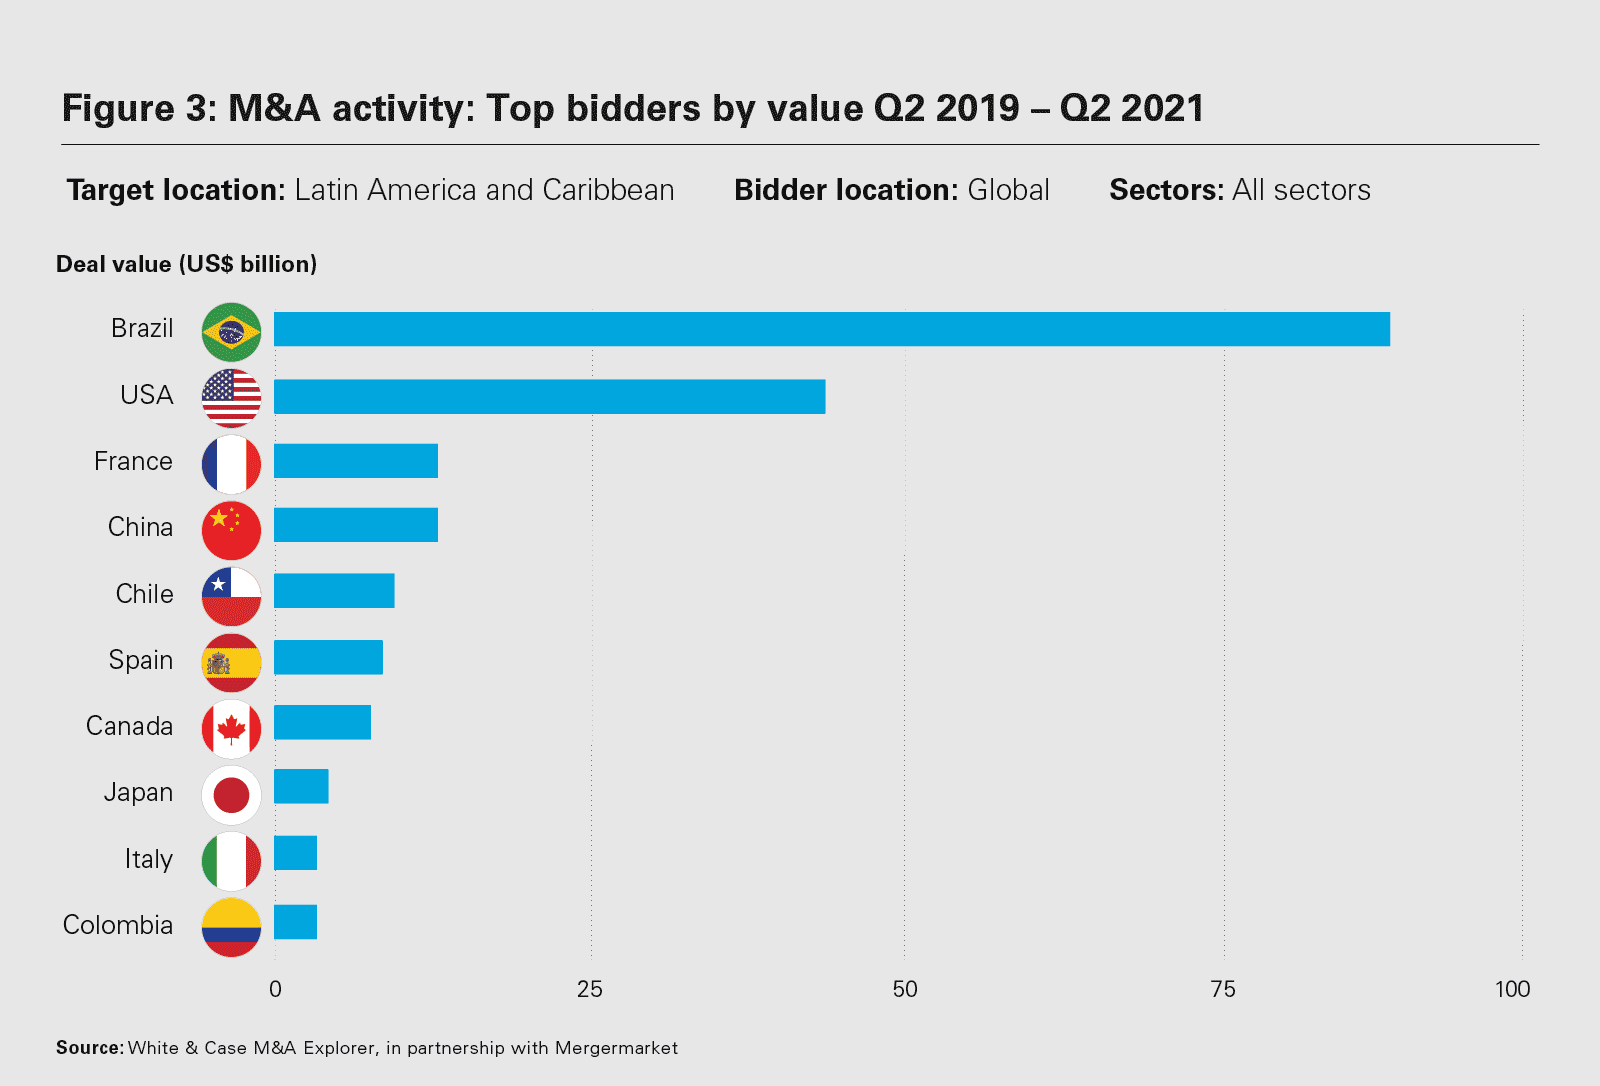 M&A activity: Top bidders by value Q2 2019 – Q2 2021